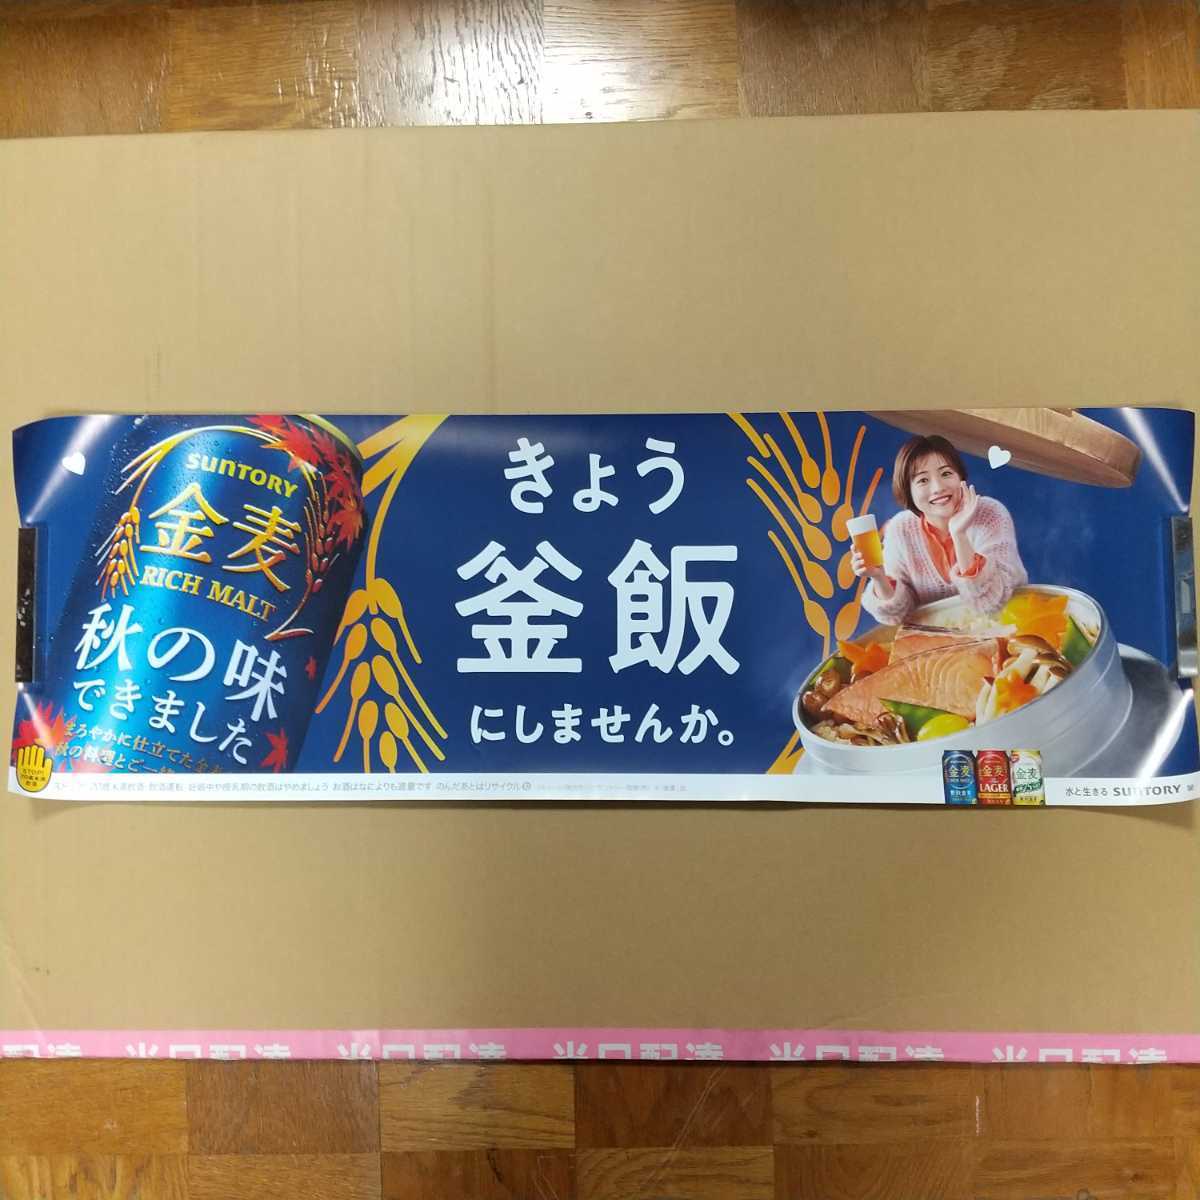  Ishihara Satomi постер золотой пшеница не использовался 